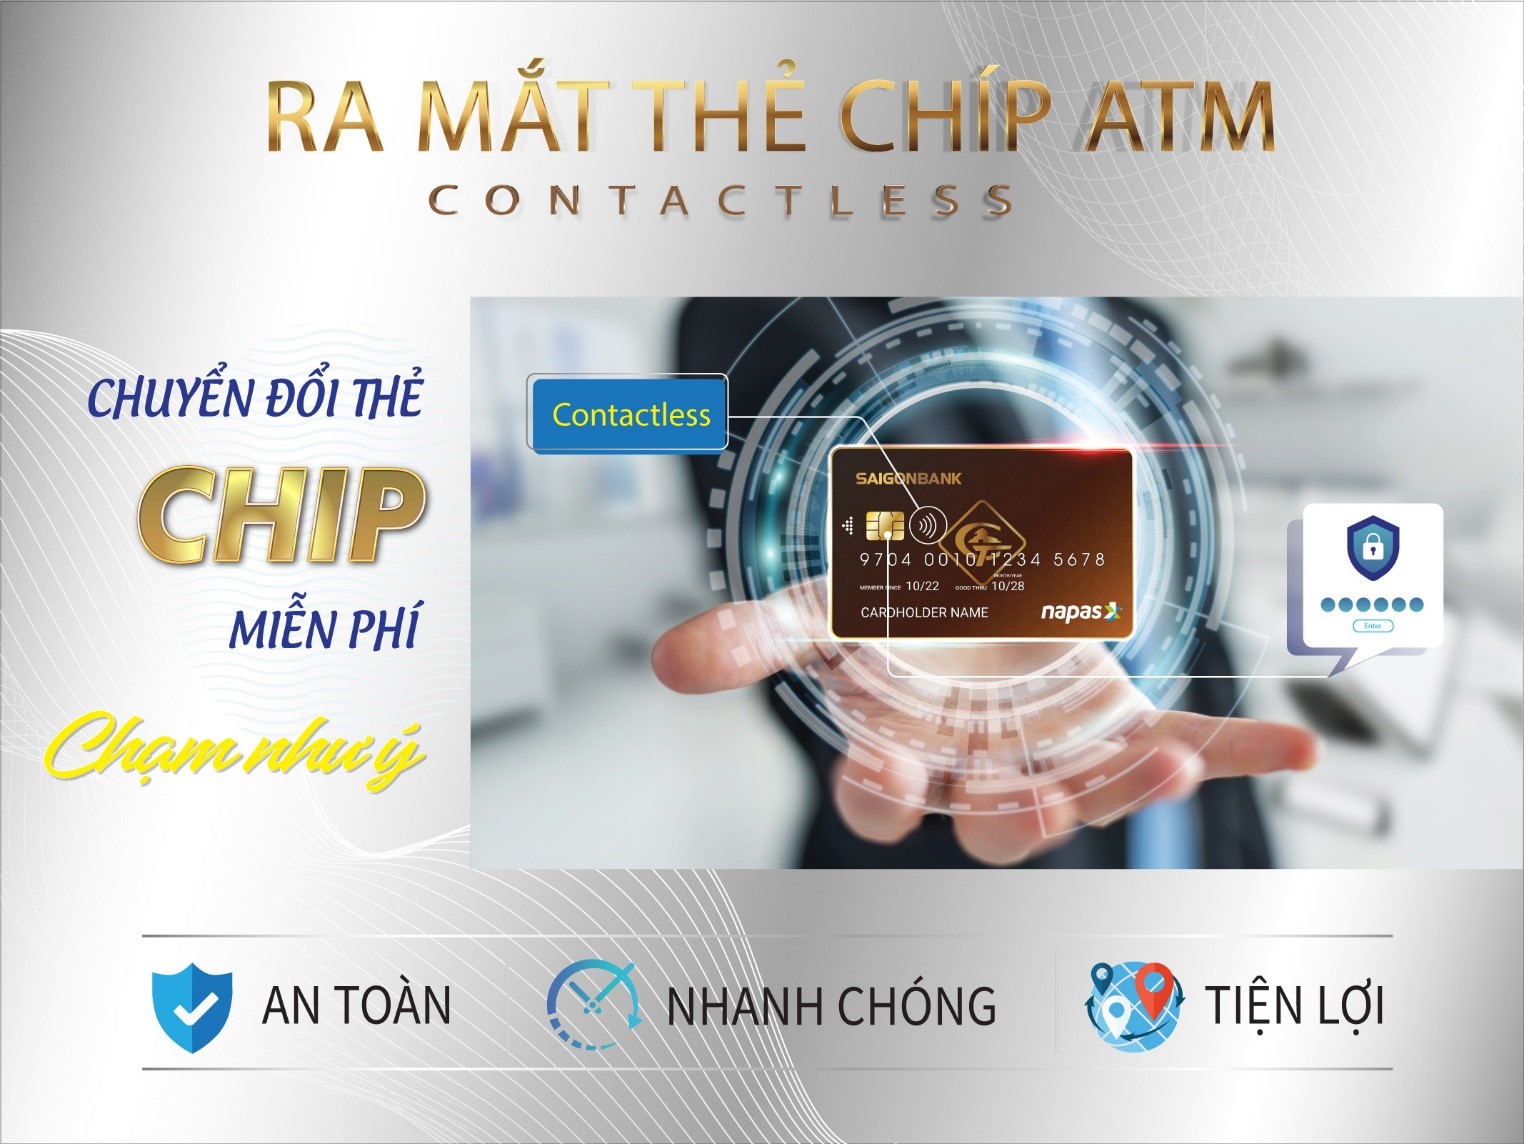 Thông báo về việc chuyển đổi thẻ chip ghi nợ nội địa Saigonbank